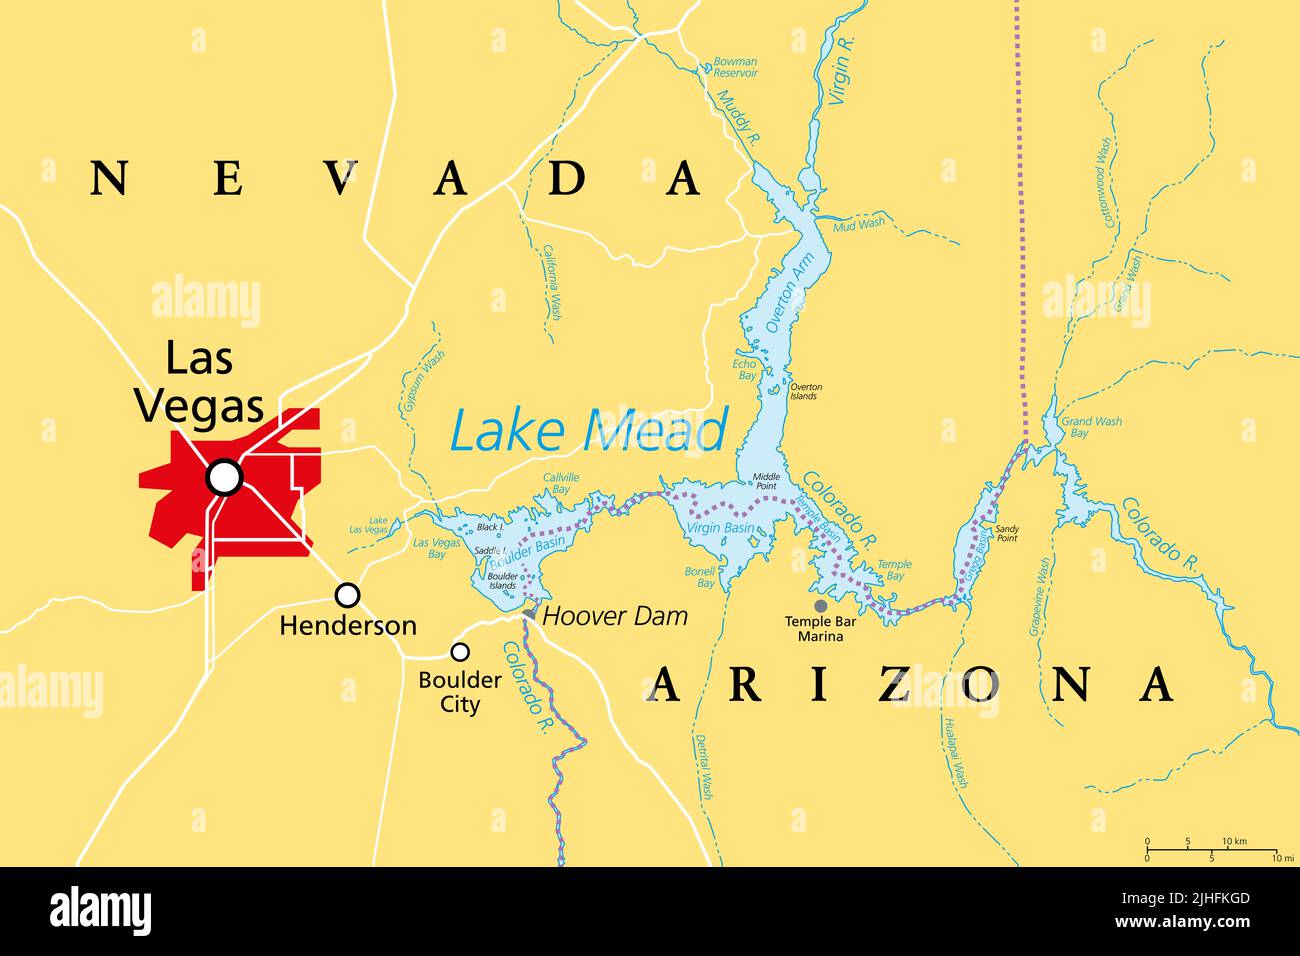 Las Vegas e il lago Mead, mappa politica. Vegas, la città più popolosa del Nevada, conosciuta principalmente per il gioco d'azzardo e il divertimento, a sinistra del lago Mead. Foto Stock